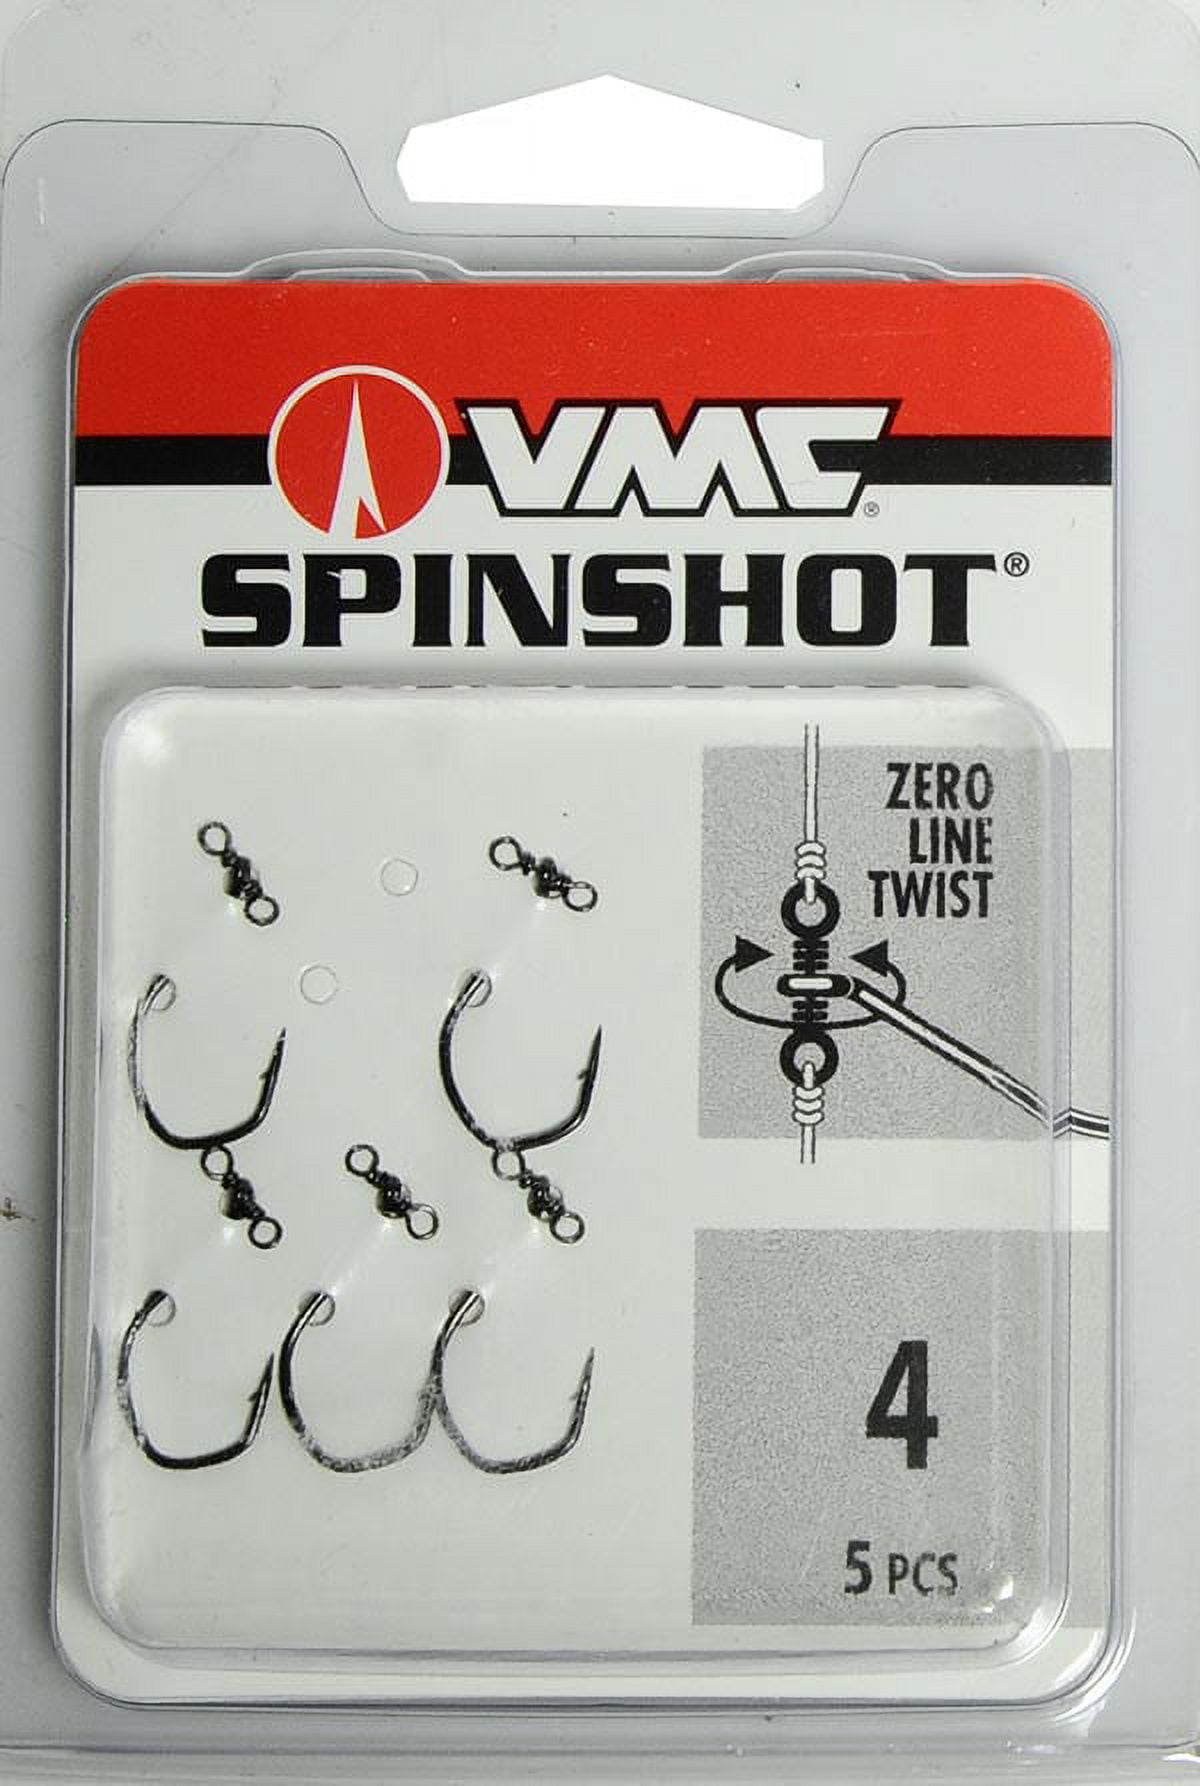 VMC SpinShot Drop Shot Hook